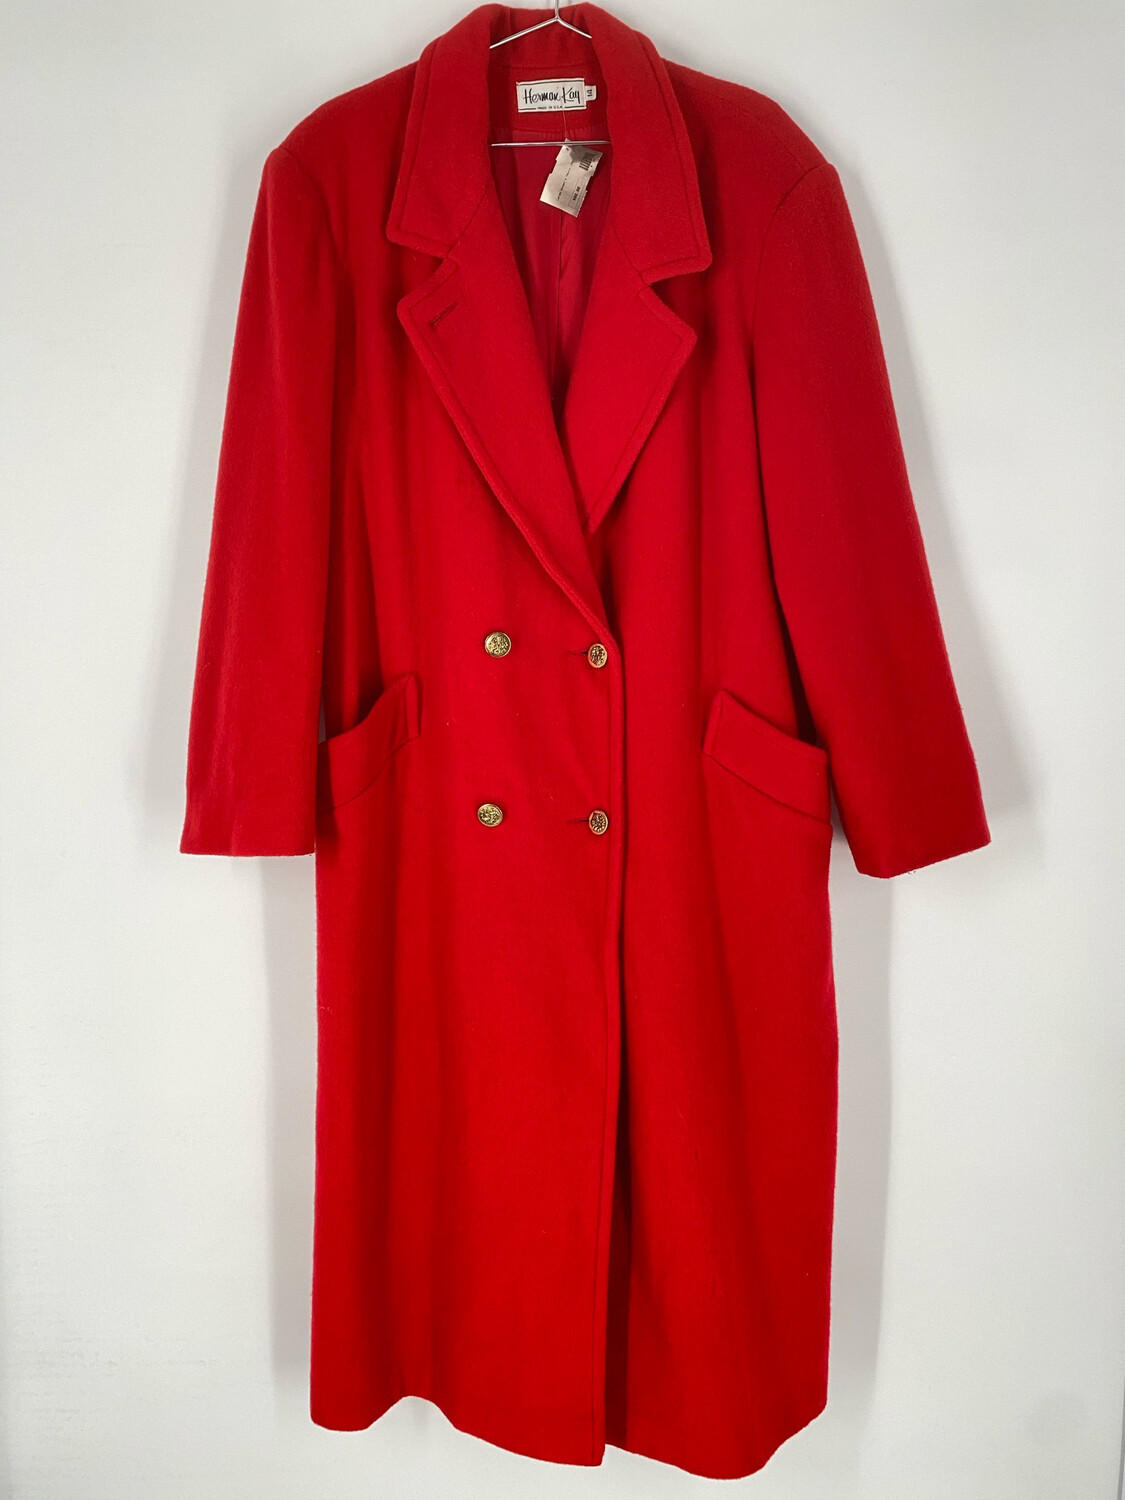 Hermak Kay Long Red Coat Size L